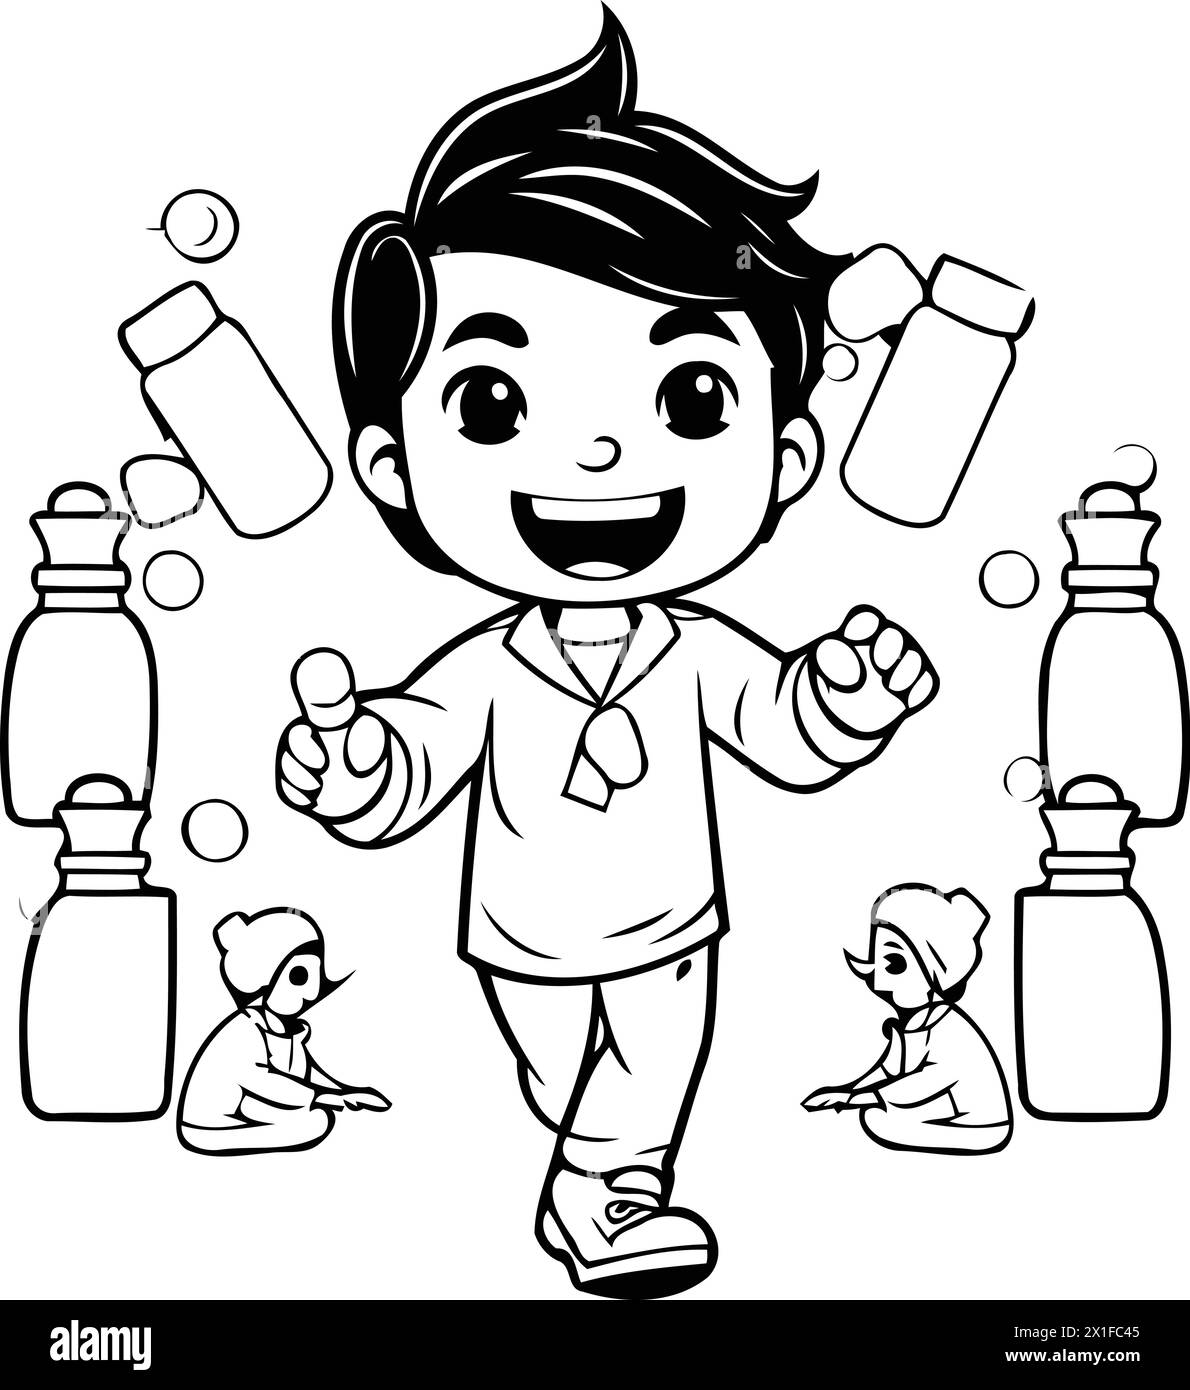 Niedliche Boy-Zeichentrickfigur mit Arzneiflaschen und Pillen. Vektorabbildung. Stock Vektor